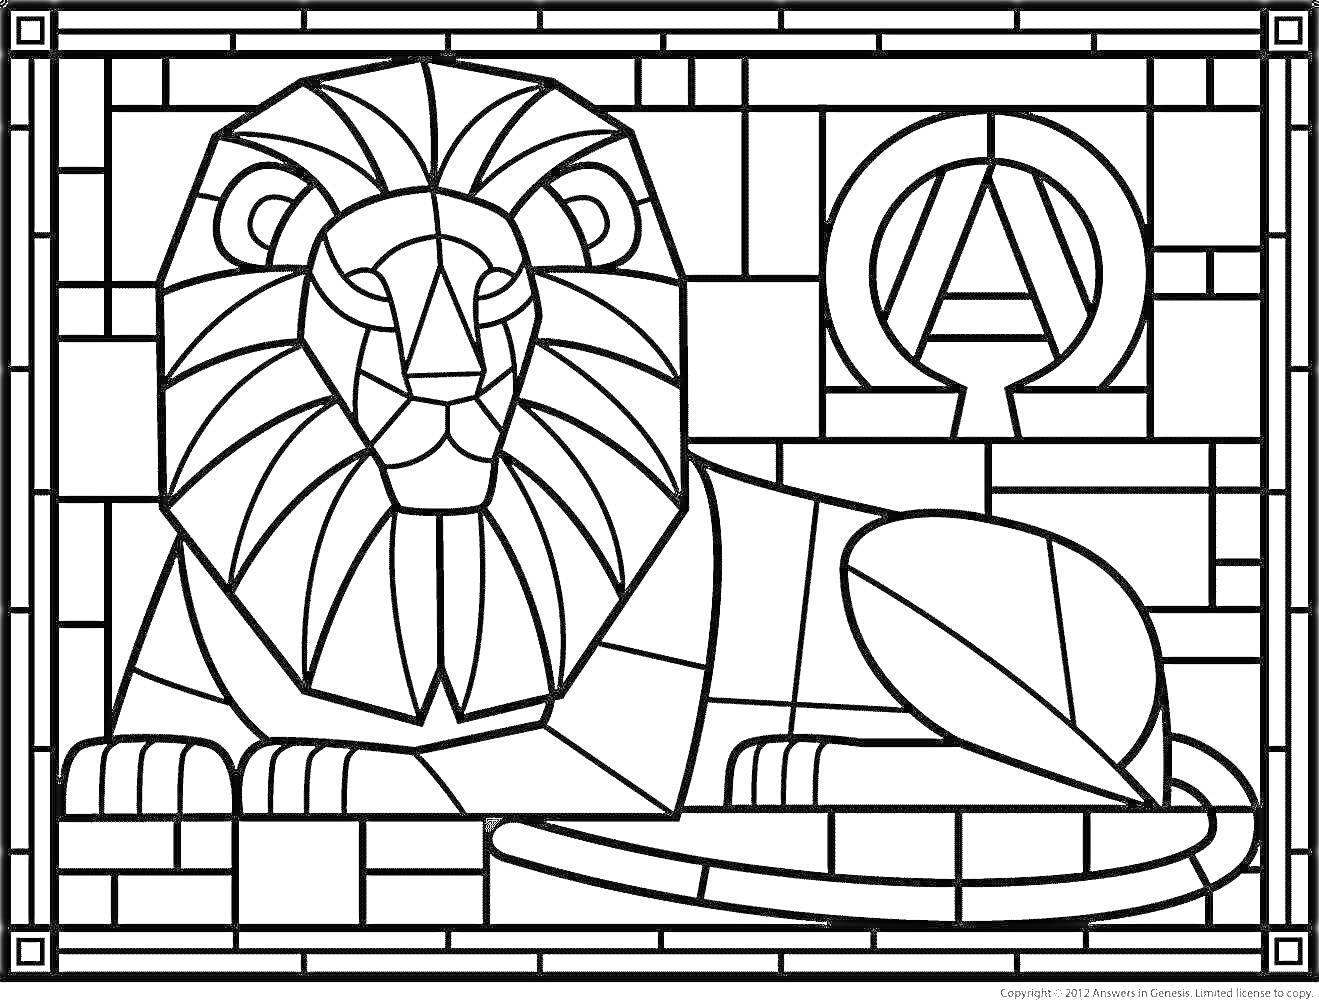 РаскраскаЛежащий лев с греческой буквой омега на фоне мозаики